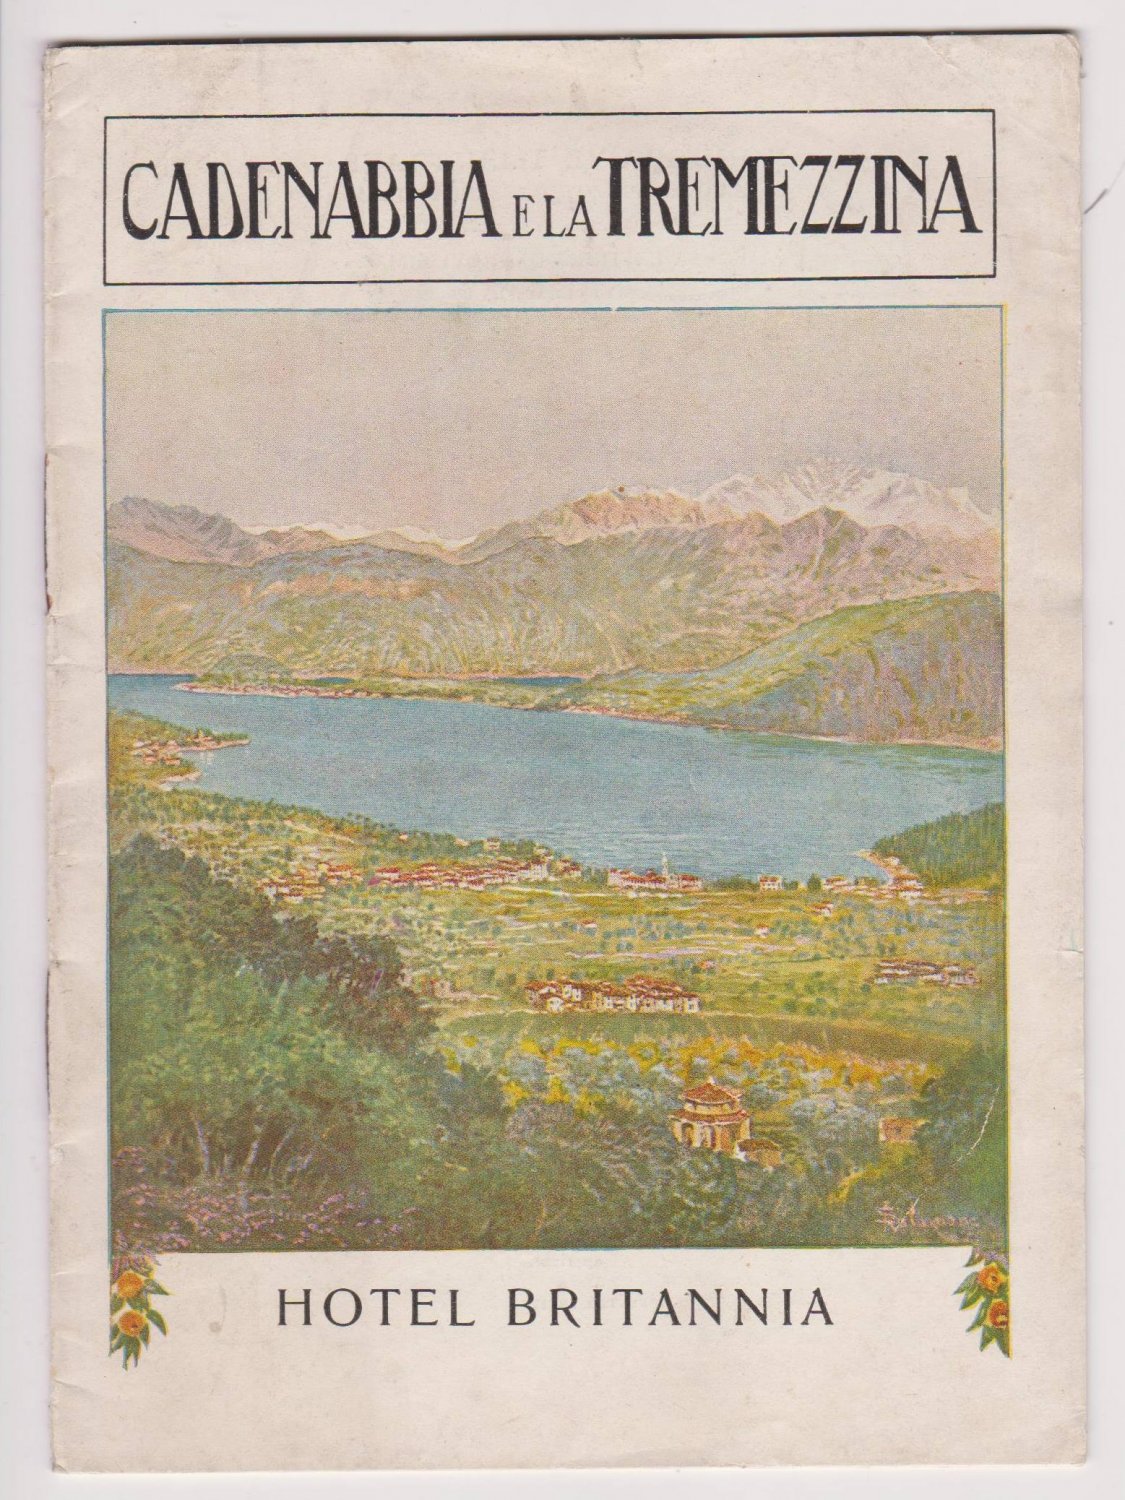 Hotel Britannia. -  Cadenabbia e la Tremezzina. 